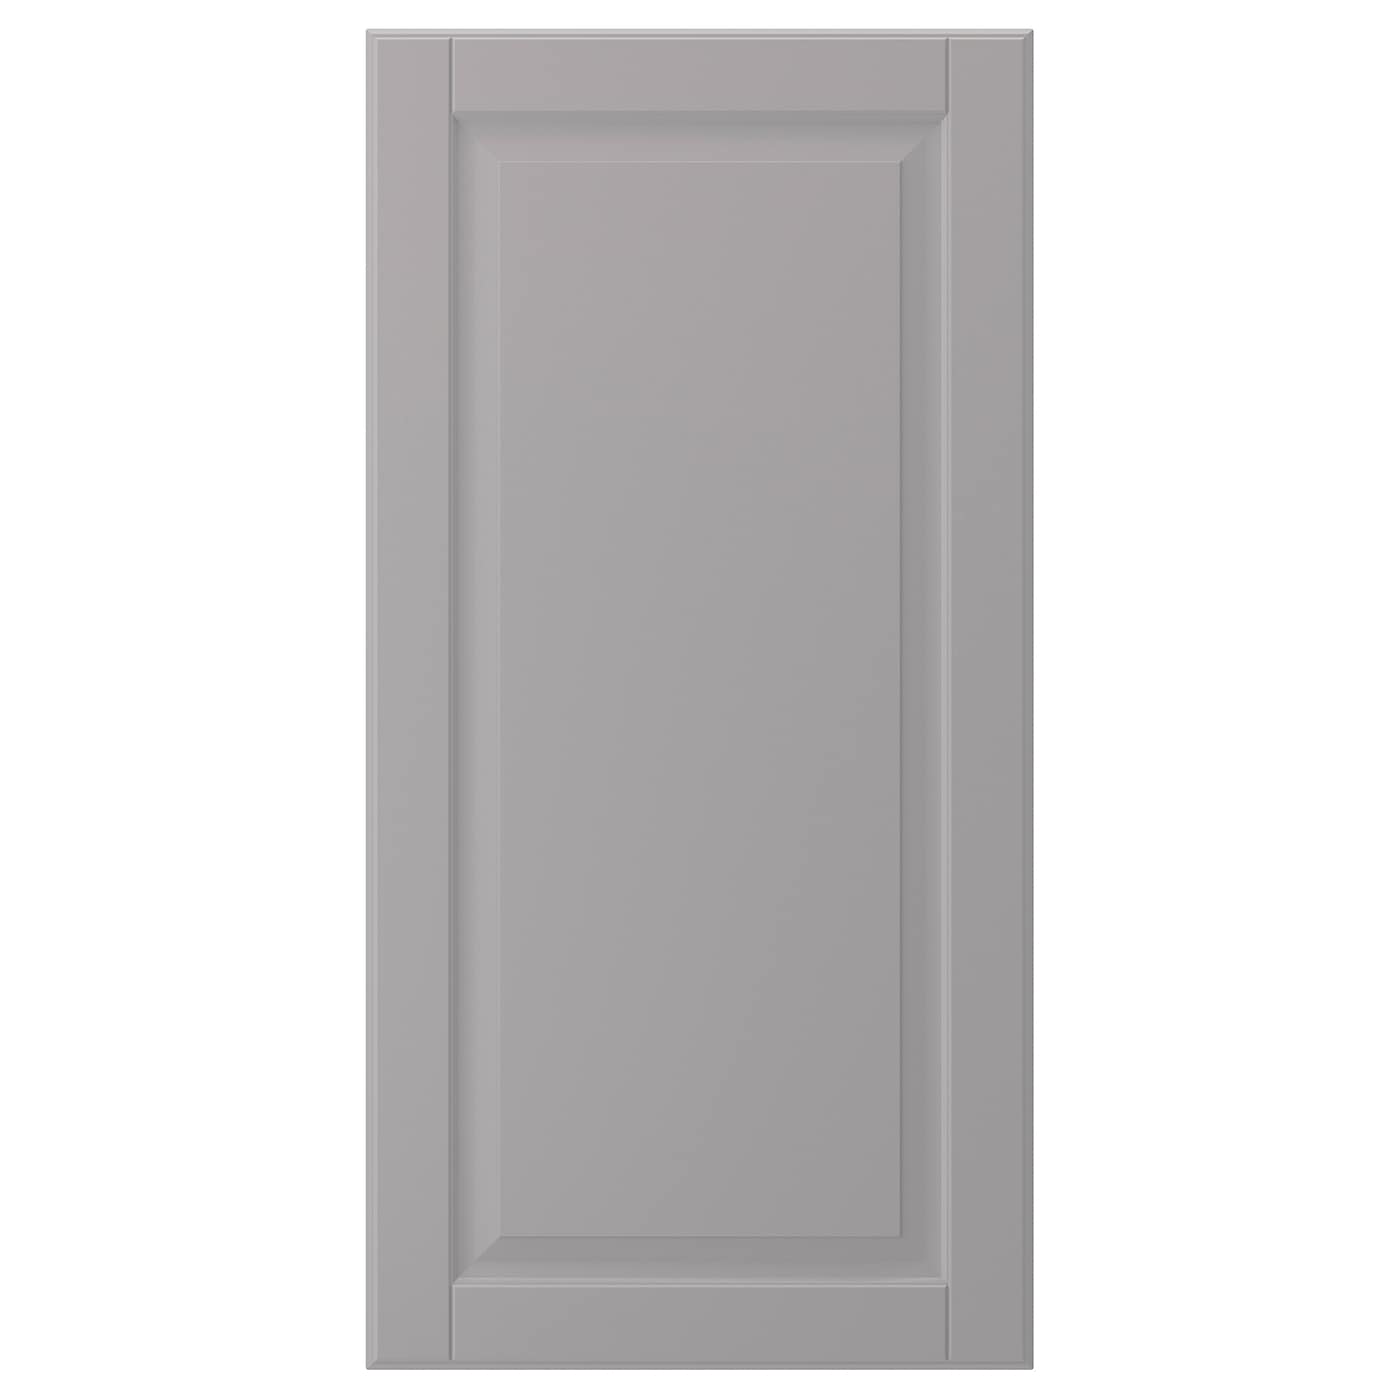 Дверца - IKEA BODBYN, 80х40 см, серый, БУДБИН ИКЕА